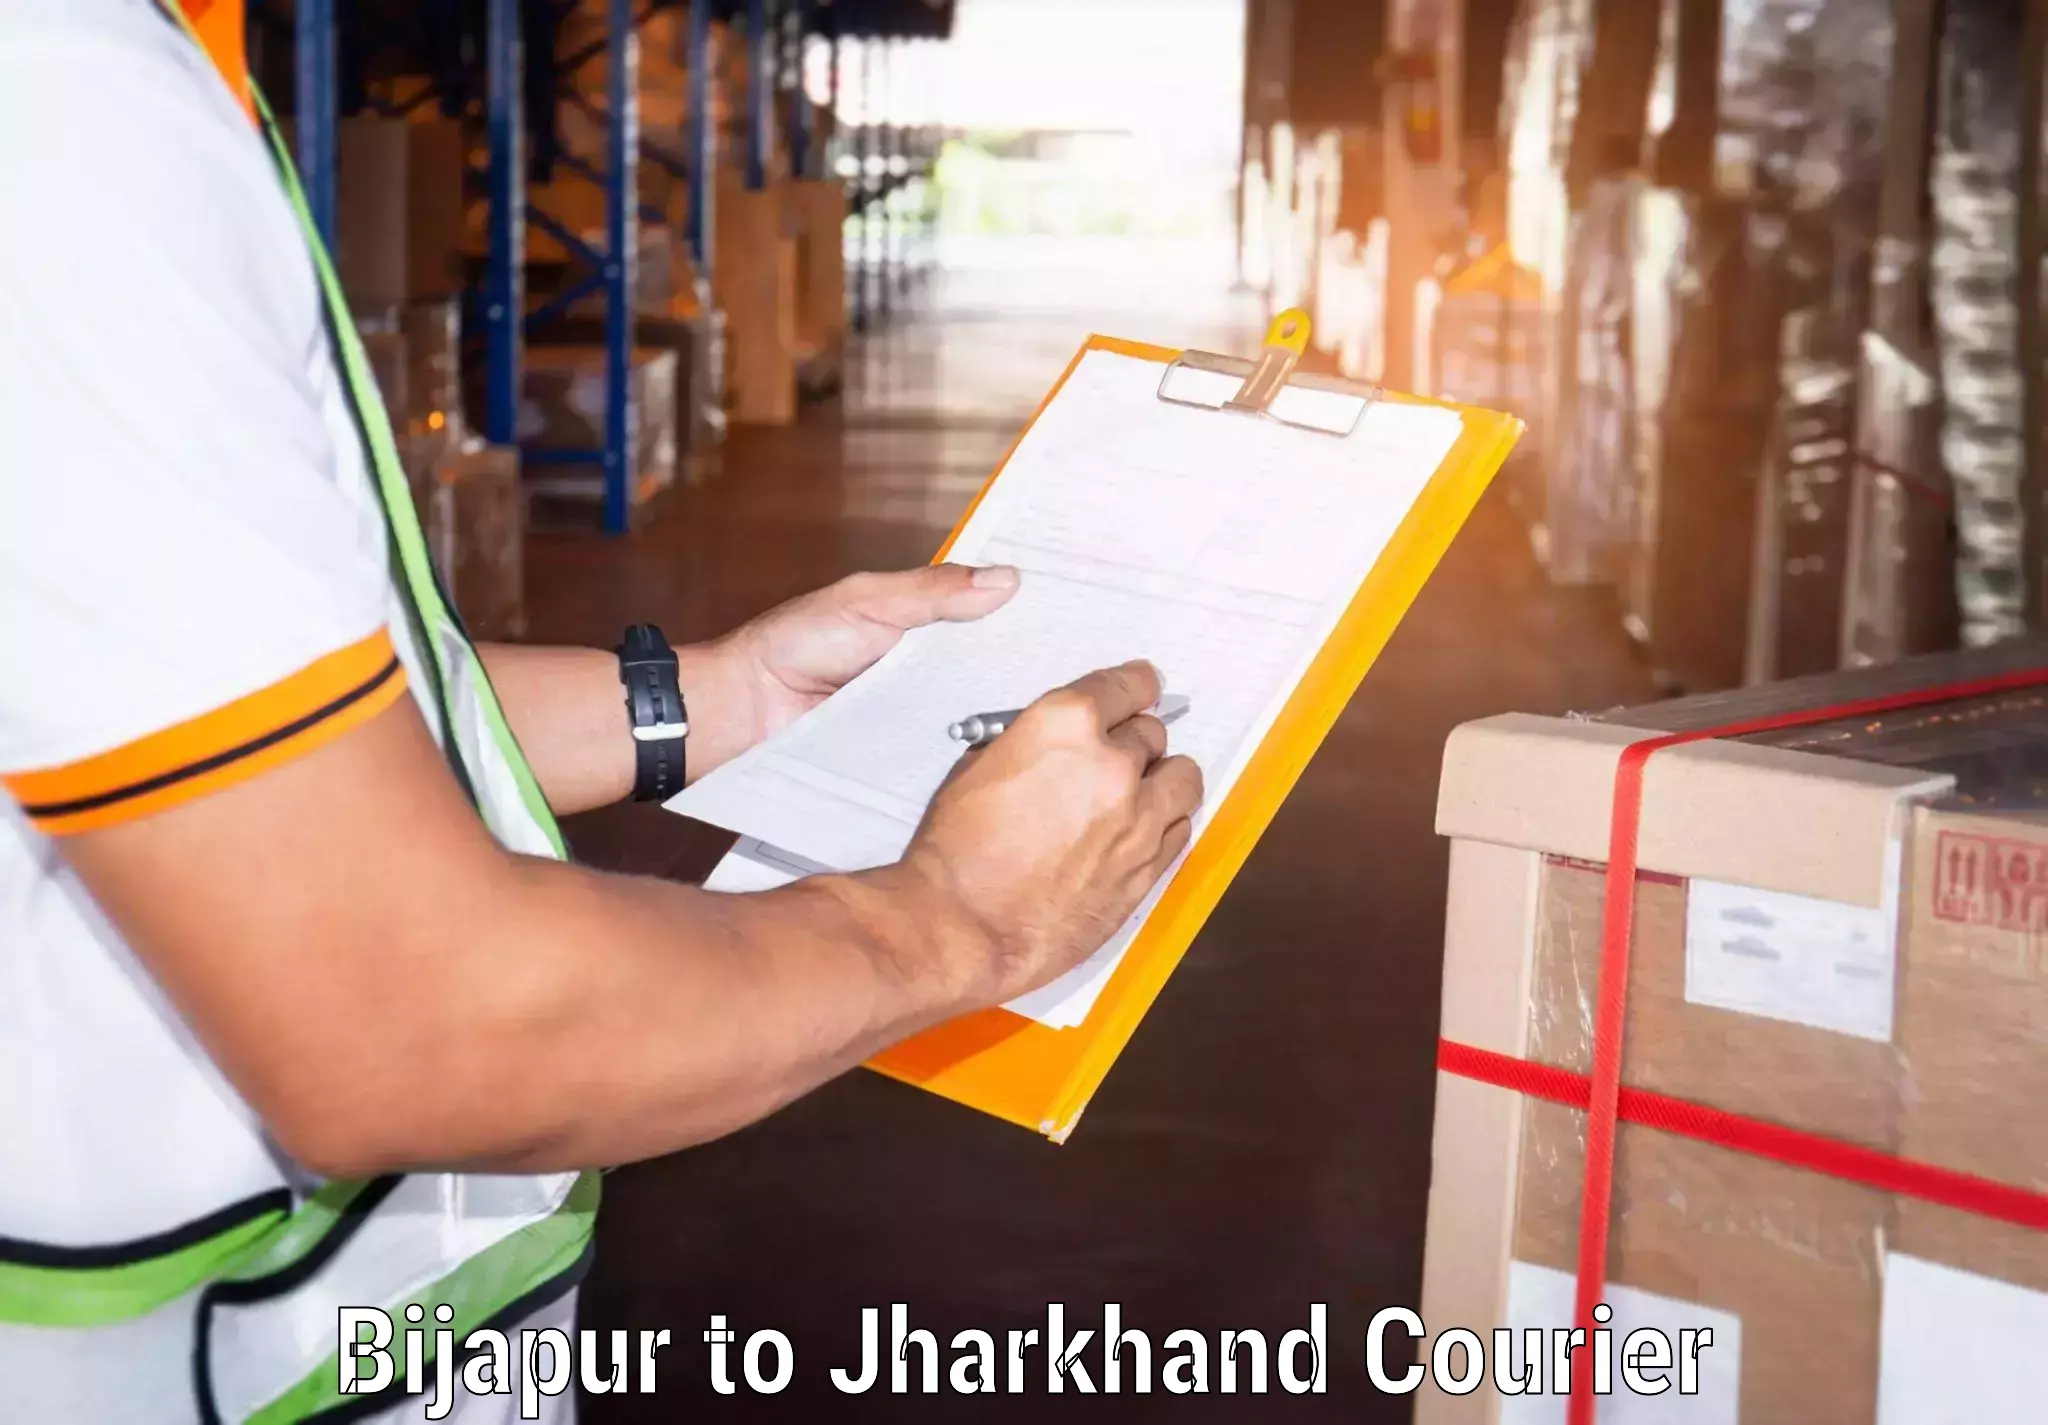 Global parcel delivery Bijapur to Bokaro